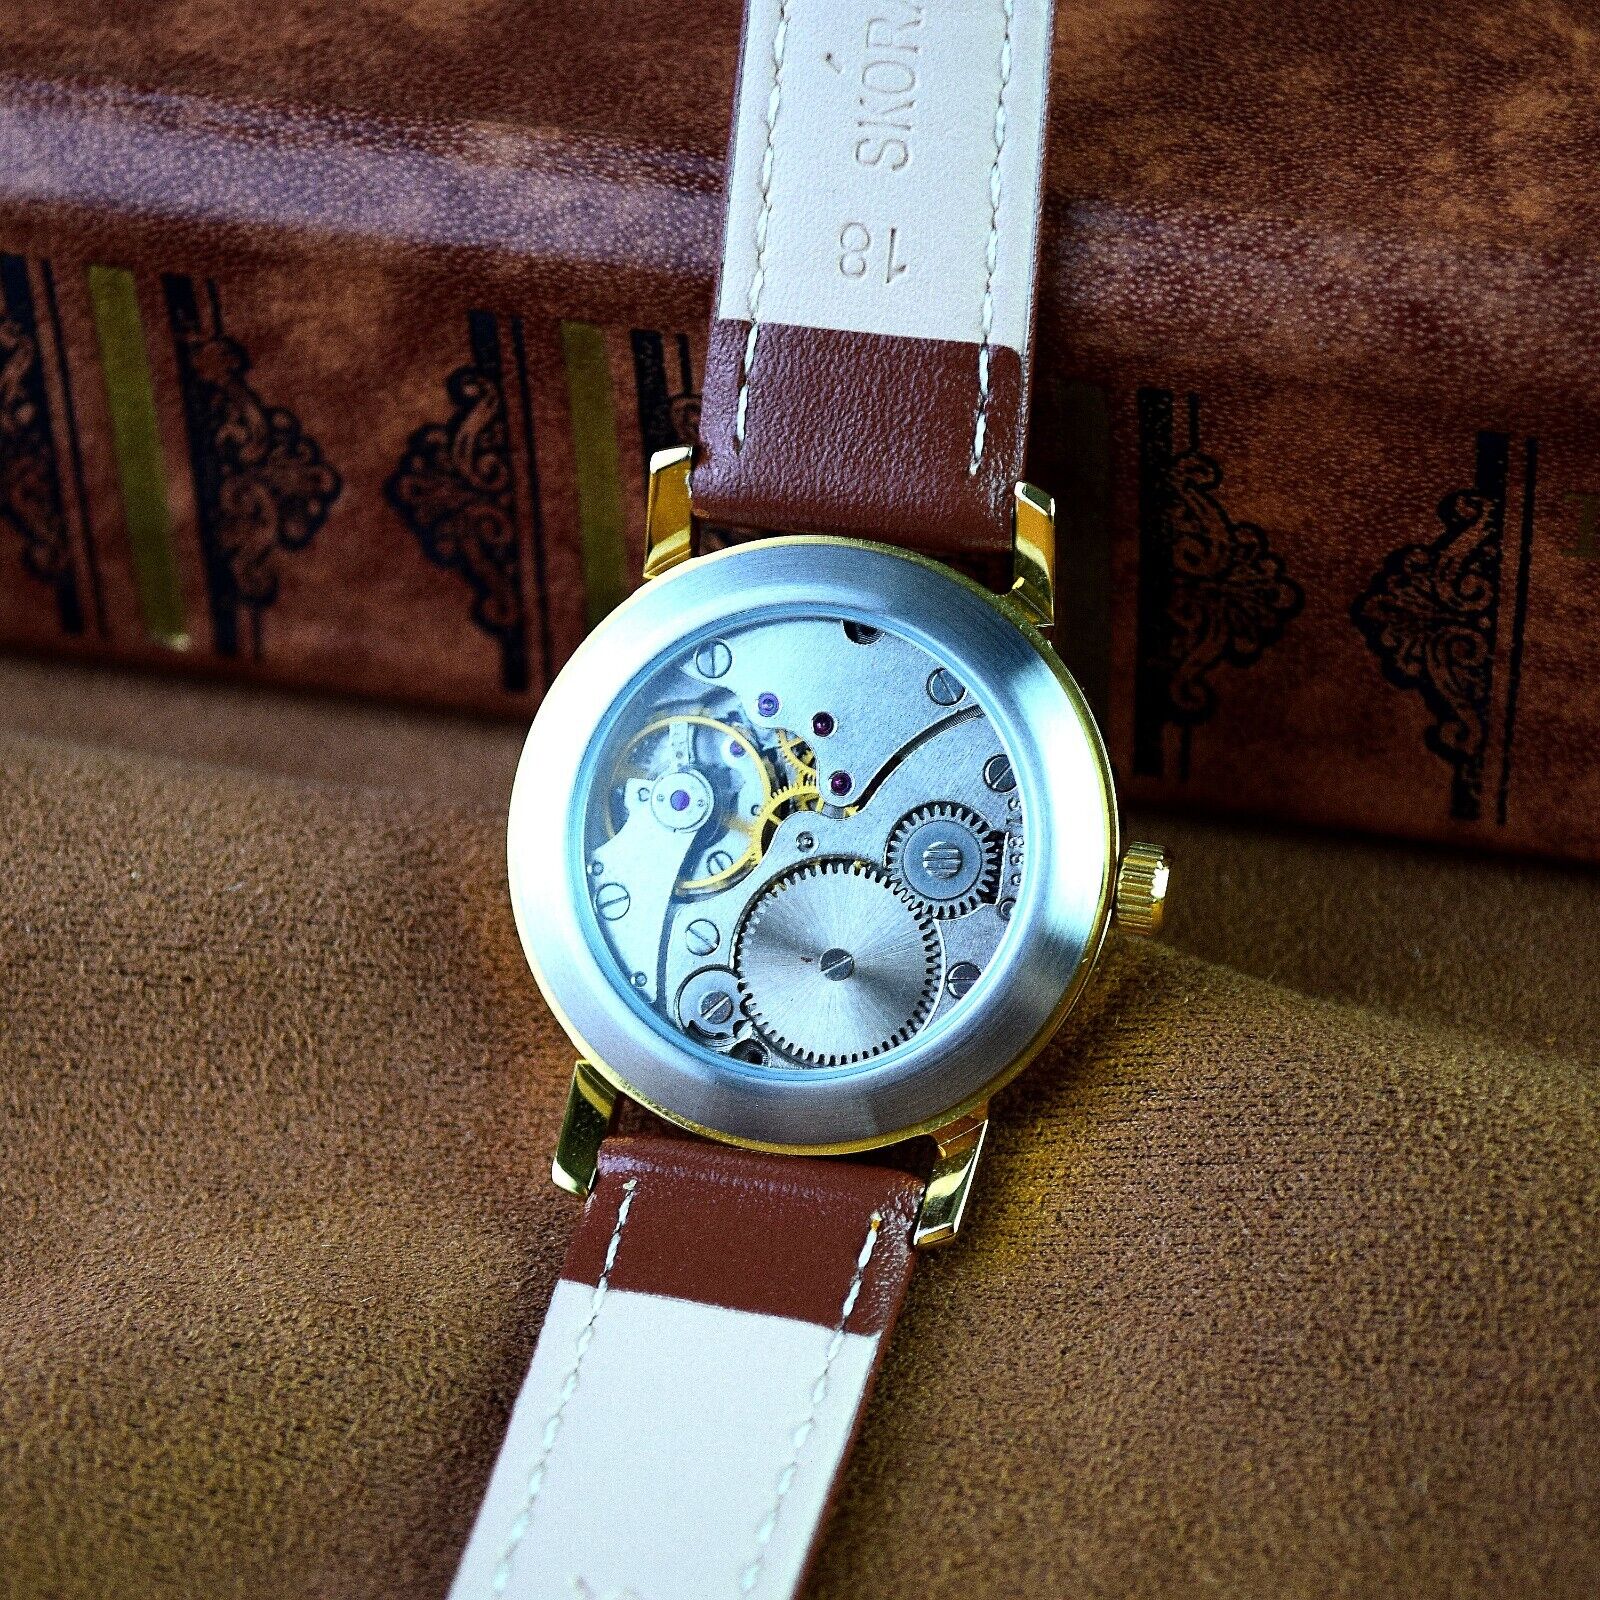 Soviet WristWatch Pobeda Space Programm Vintage Soviet Mechanical Watch USSR